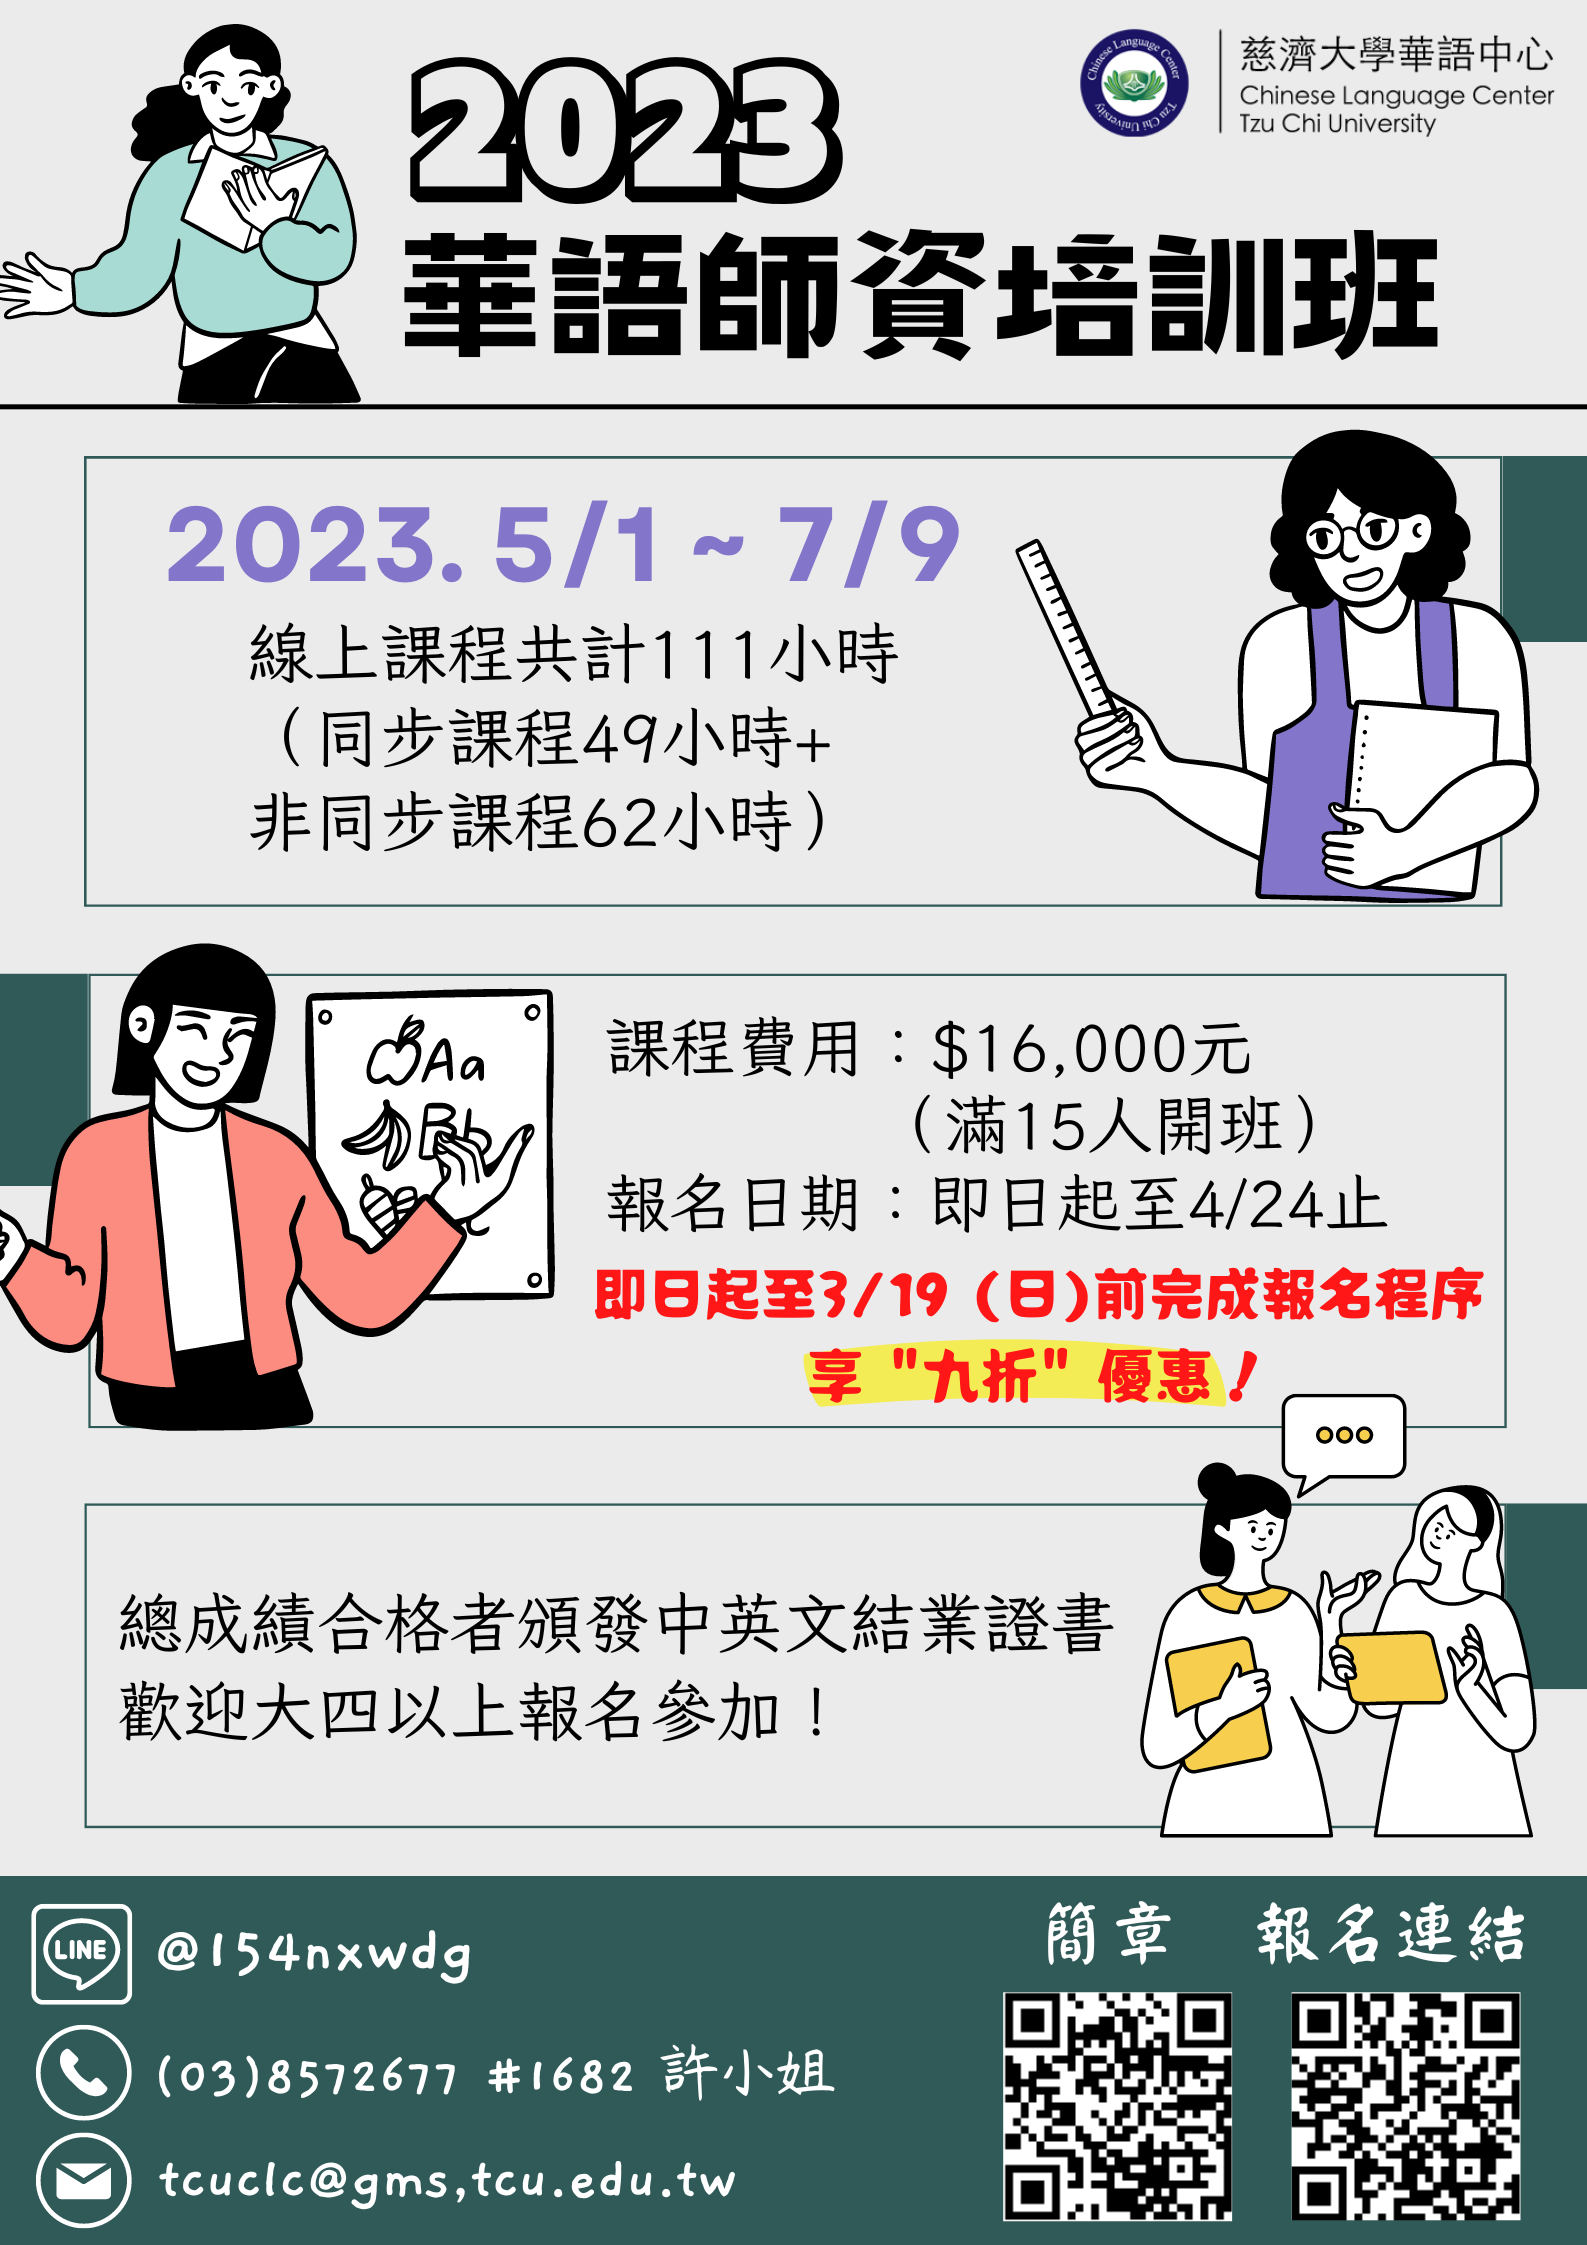 「2023華語文師資培訓班-線上課程」招生海報